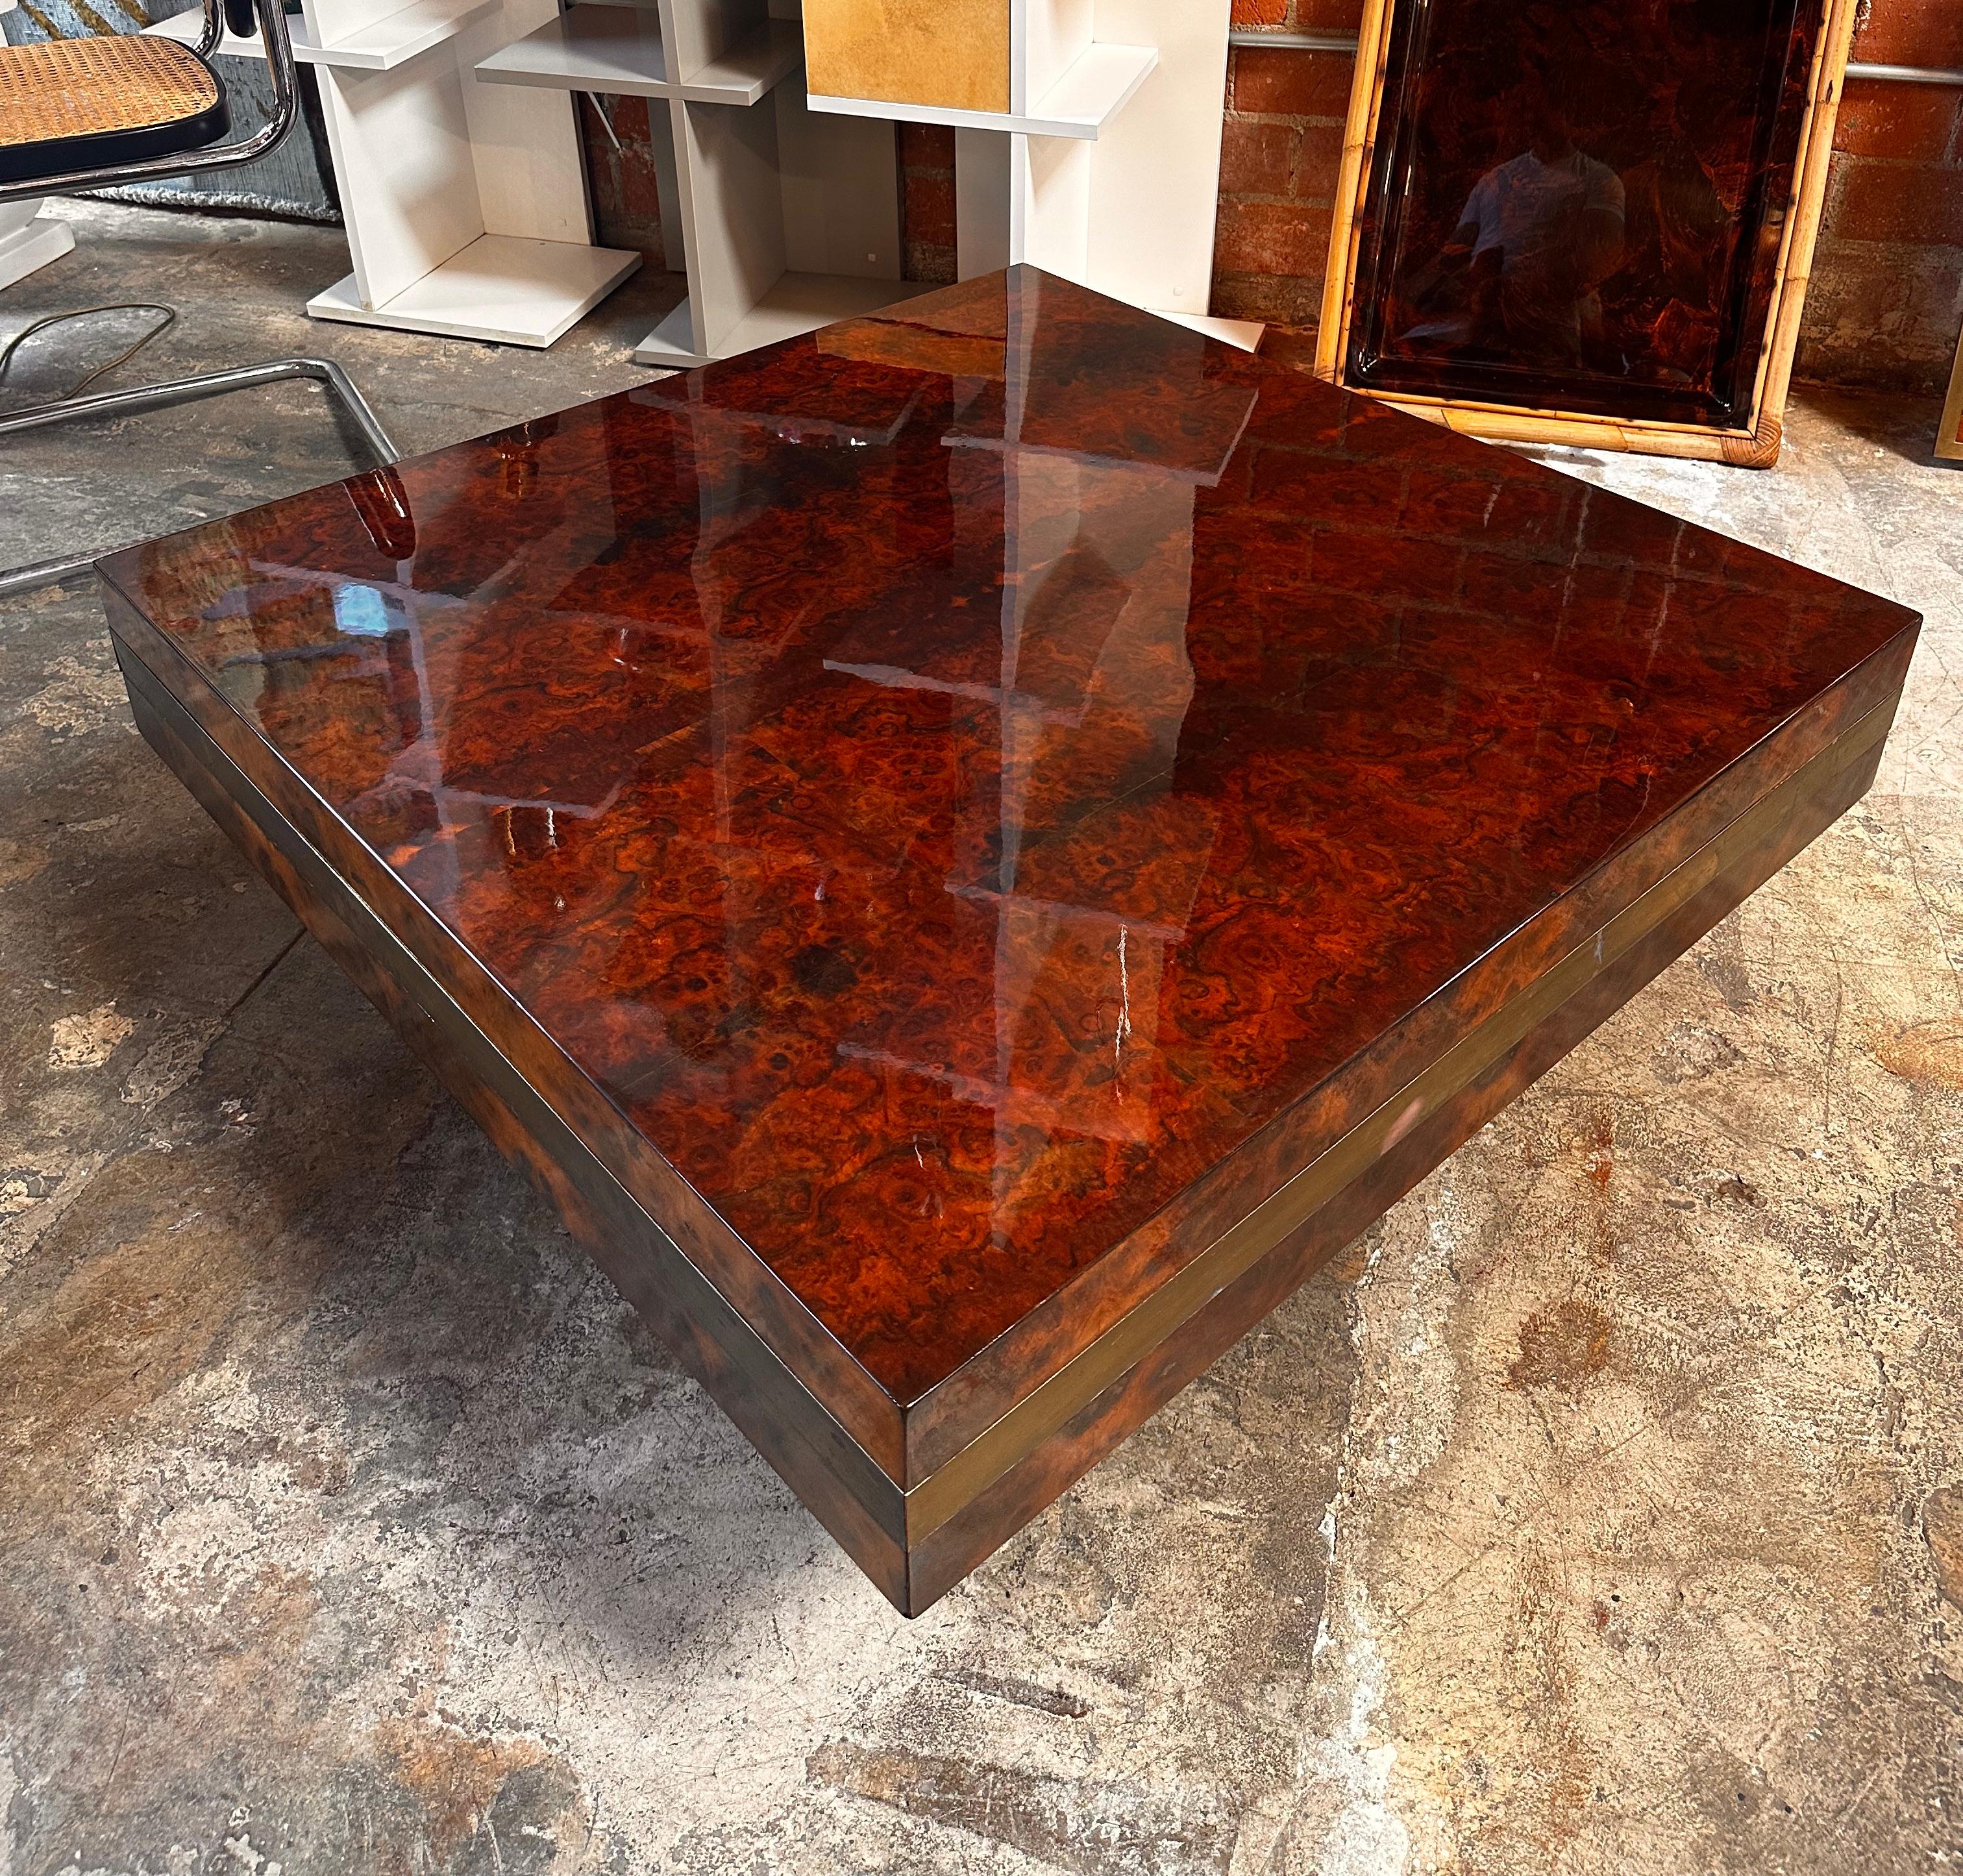 Magnifique table basse carrée en bois italien fabriquée en Italie dans les années 1970

